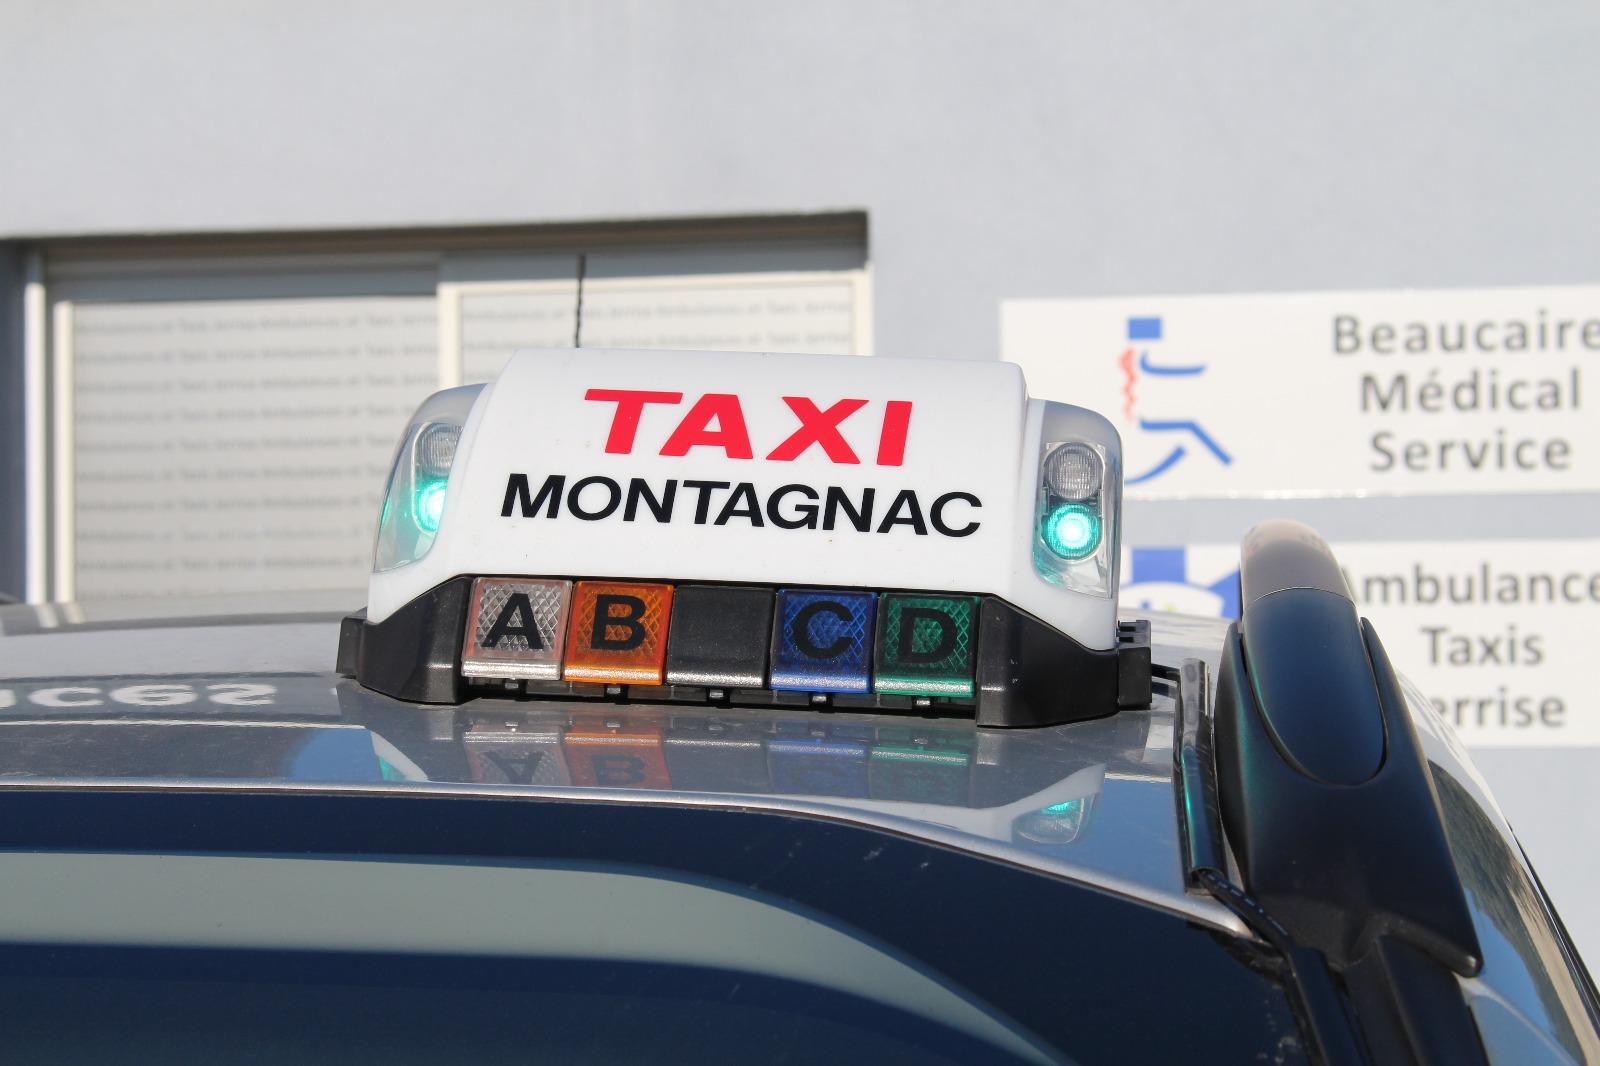 Taxi Montagnac - Ambulances et Taxis Jerrise dans le Gard (30)